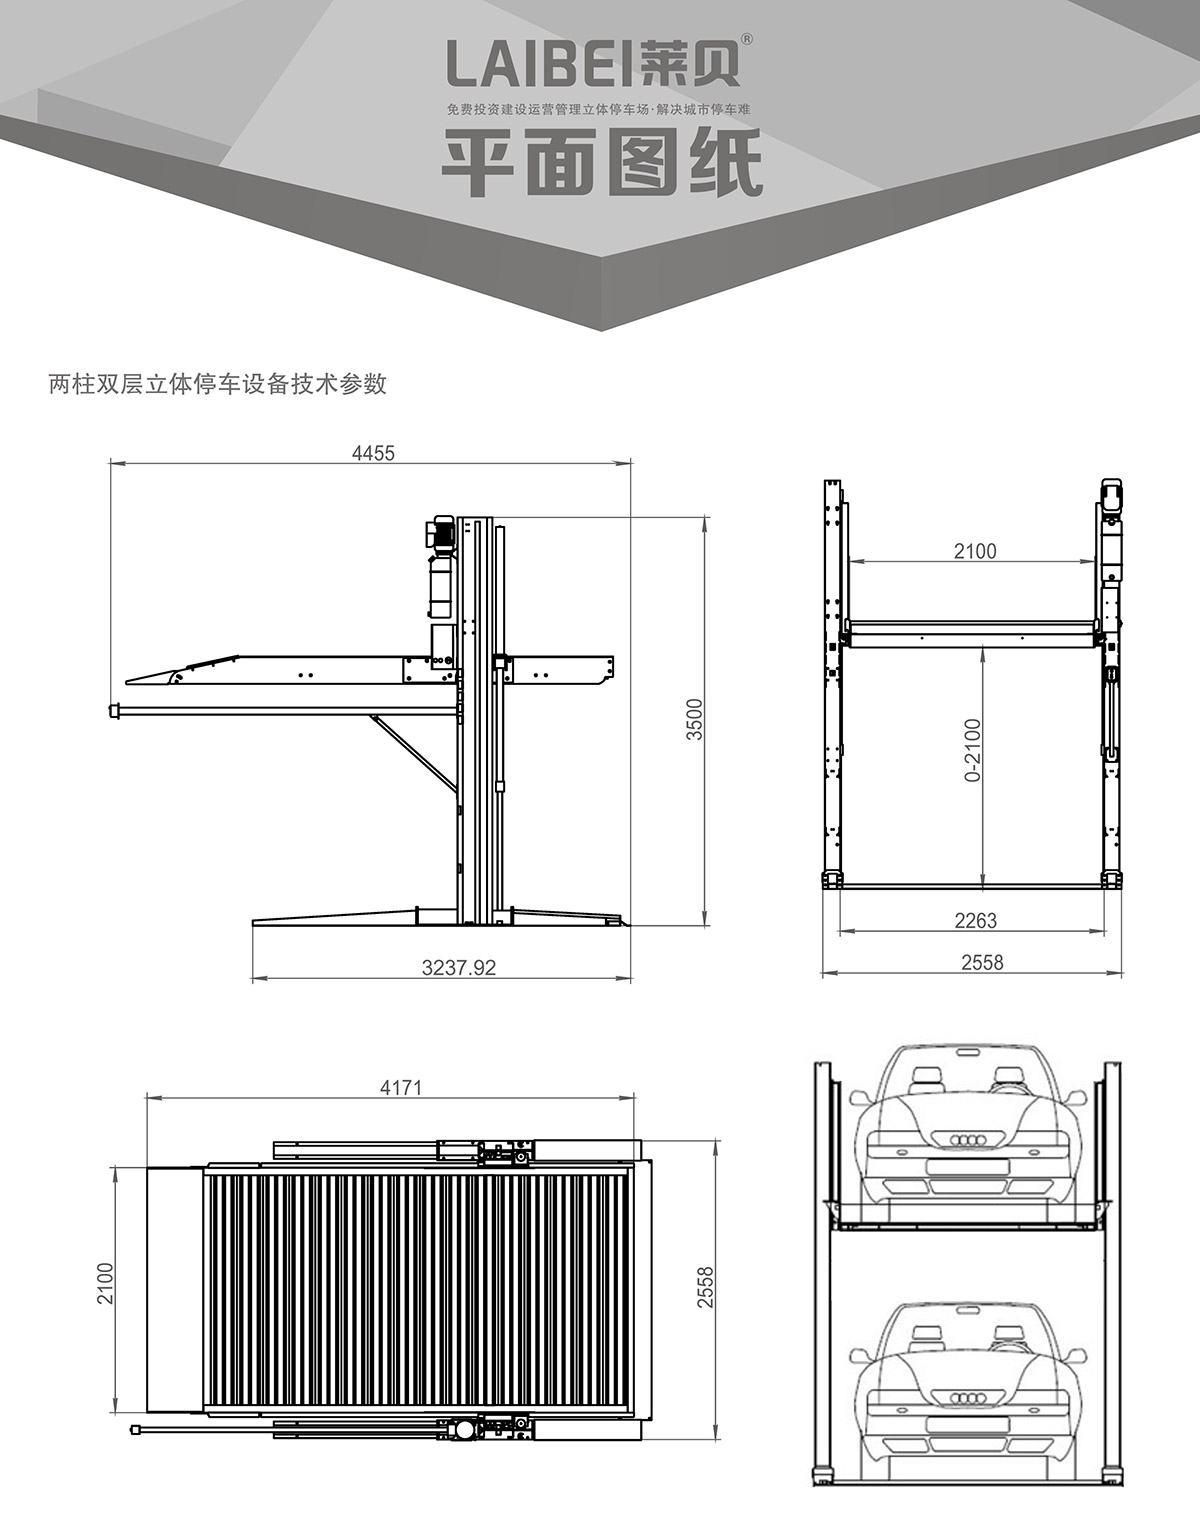 重庆PJS两柱简易升降立体停车设备平面图纸.jpg